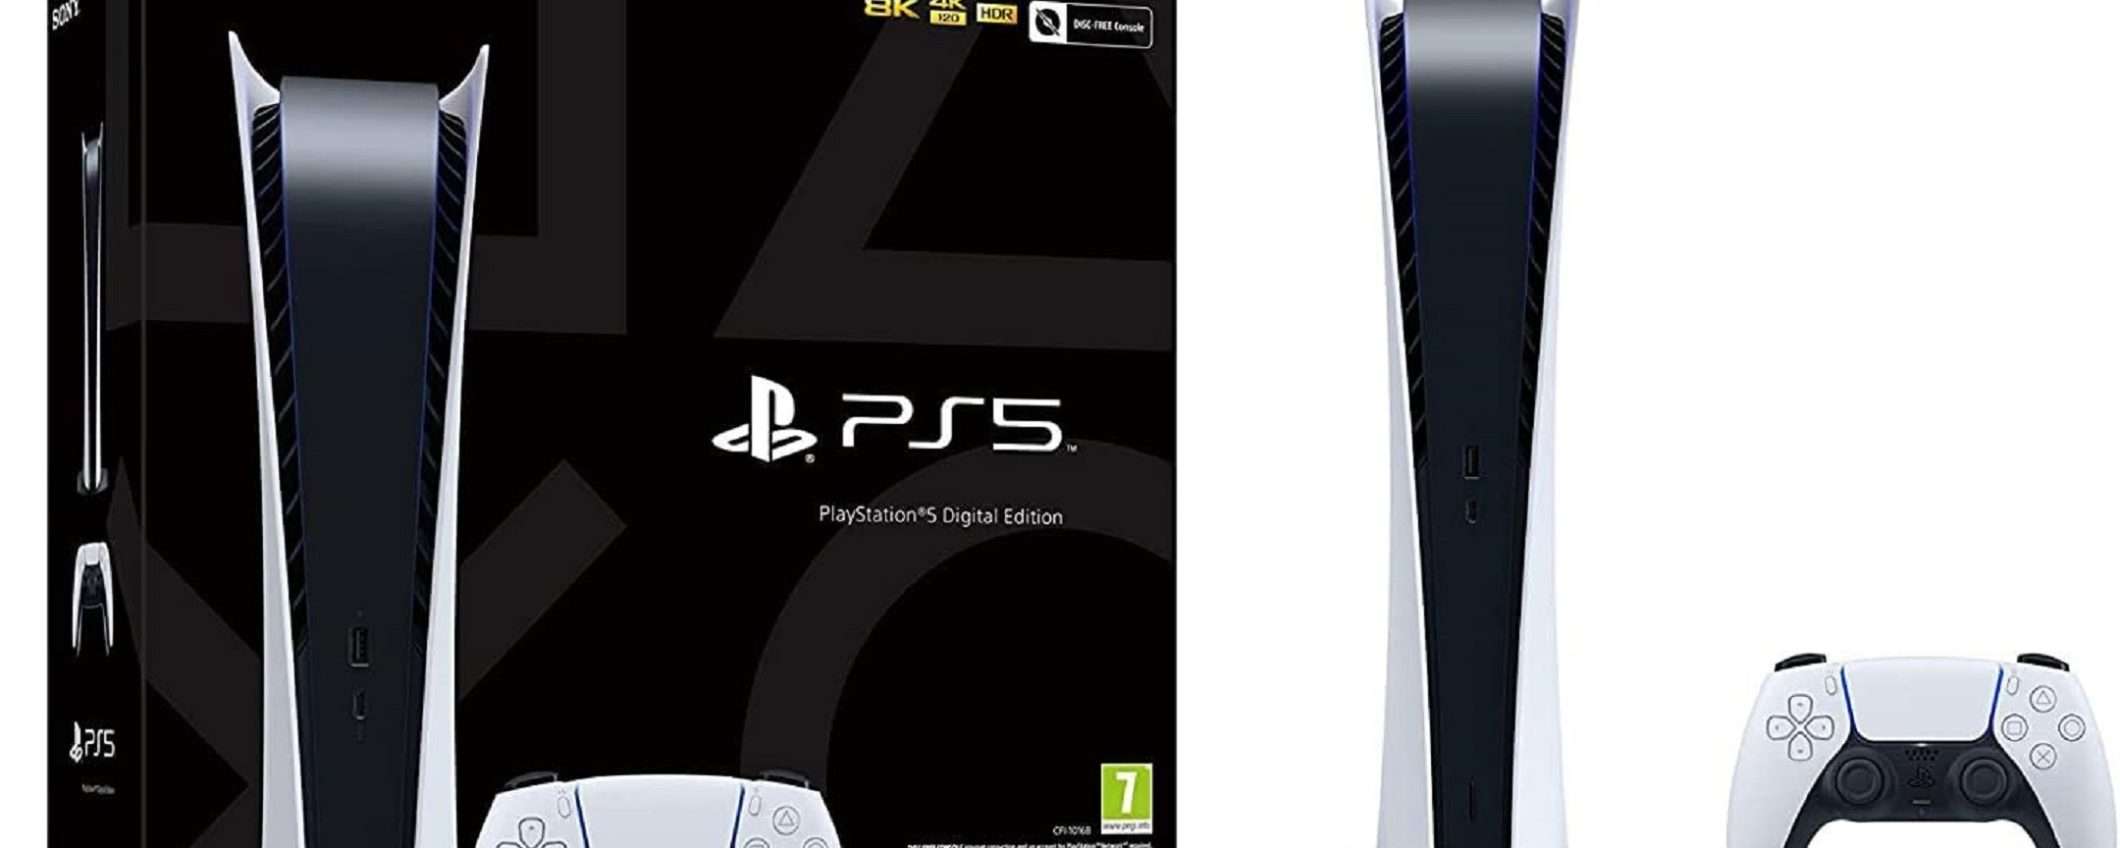 PlayStation 5 edizione Digitale: prezzo MAI VISTO su Amazon (solo 399€)